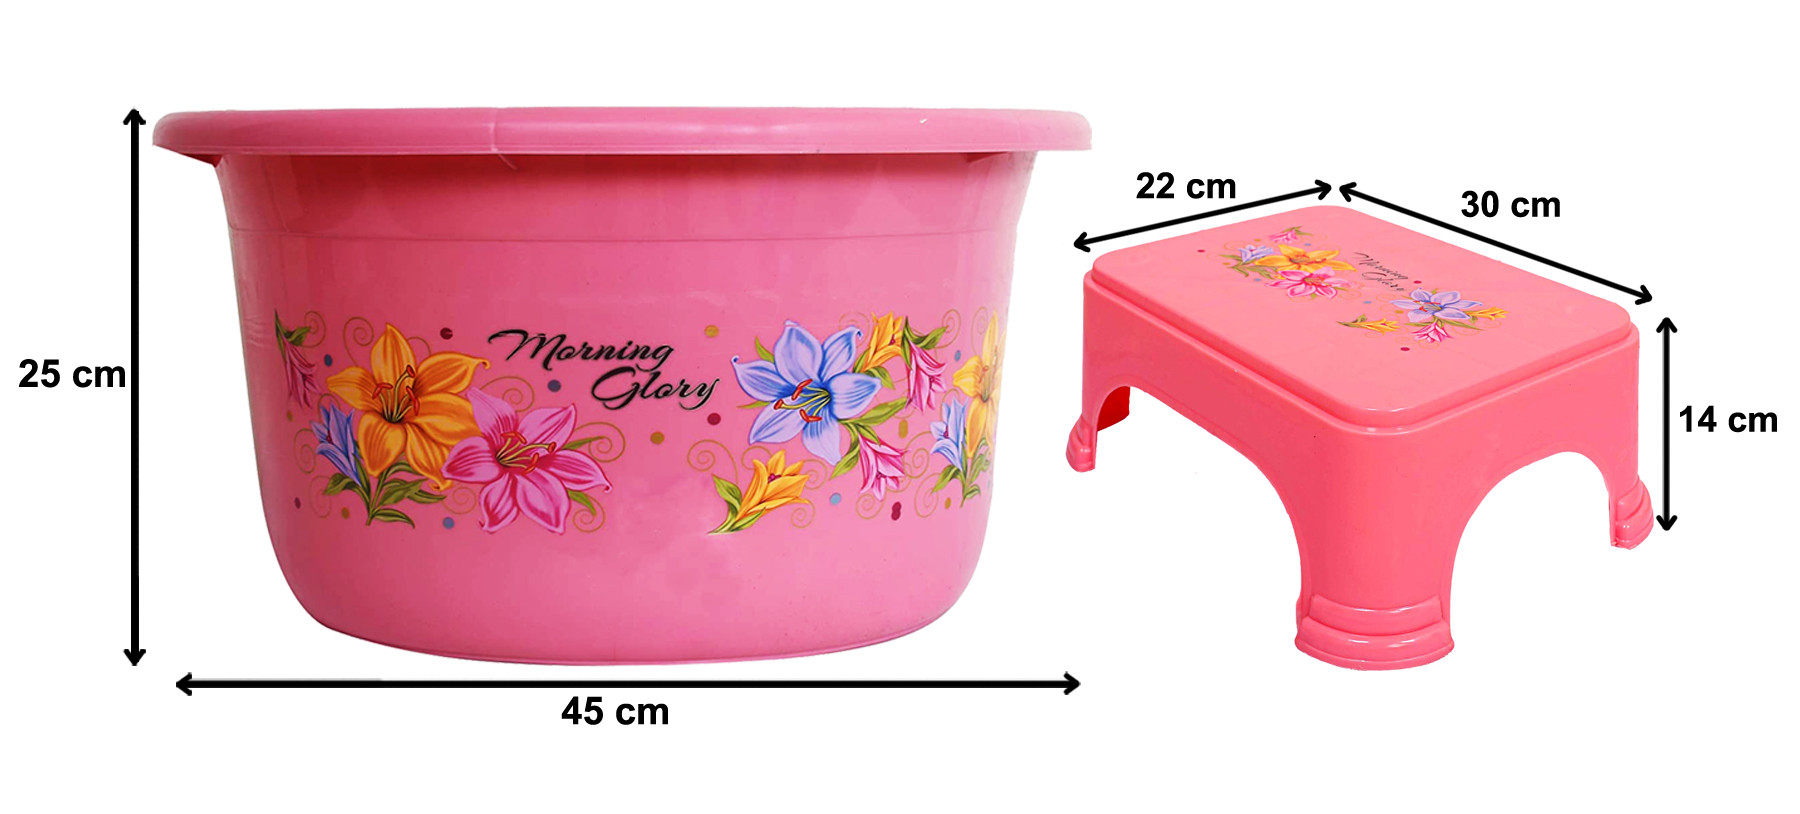 Kuber Industries Printed 2 Pieces Unbreakable Virgin Plastic Multipurpose Bathroom Tub & Stool Set (Pink)